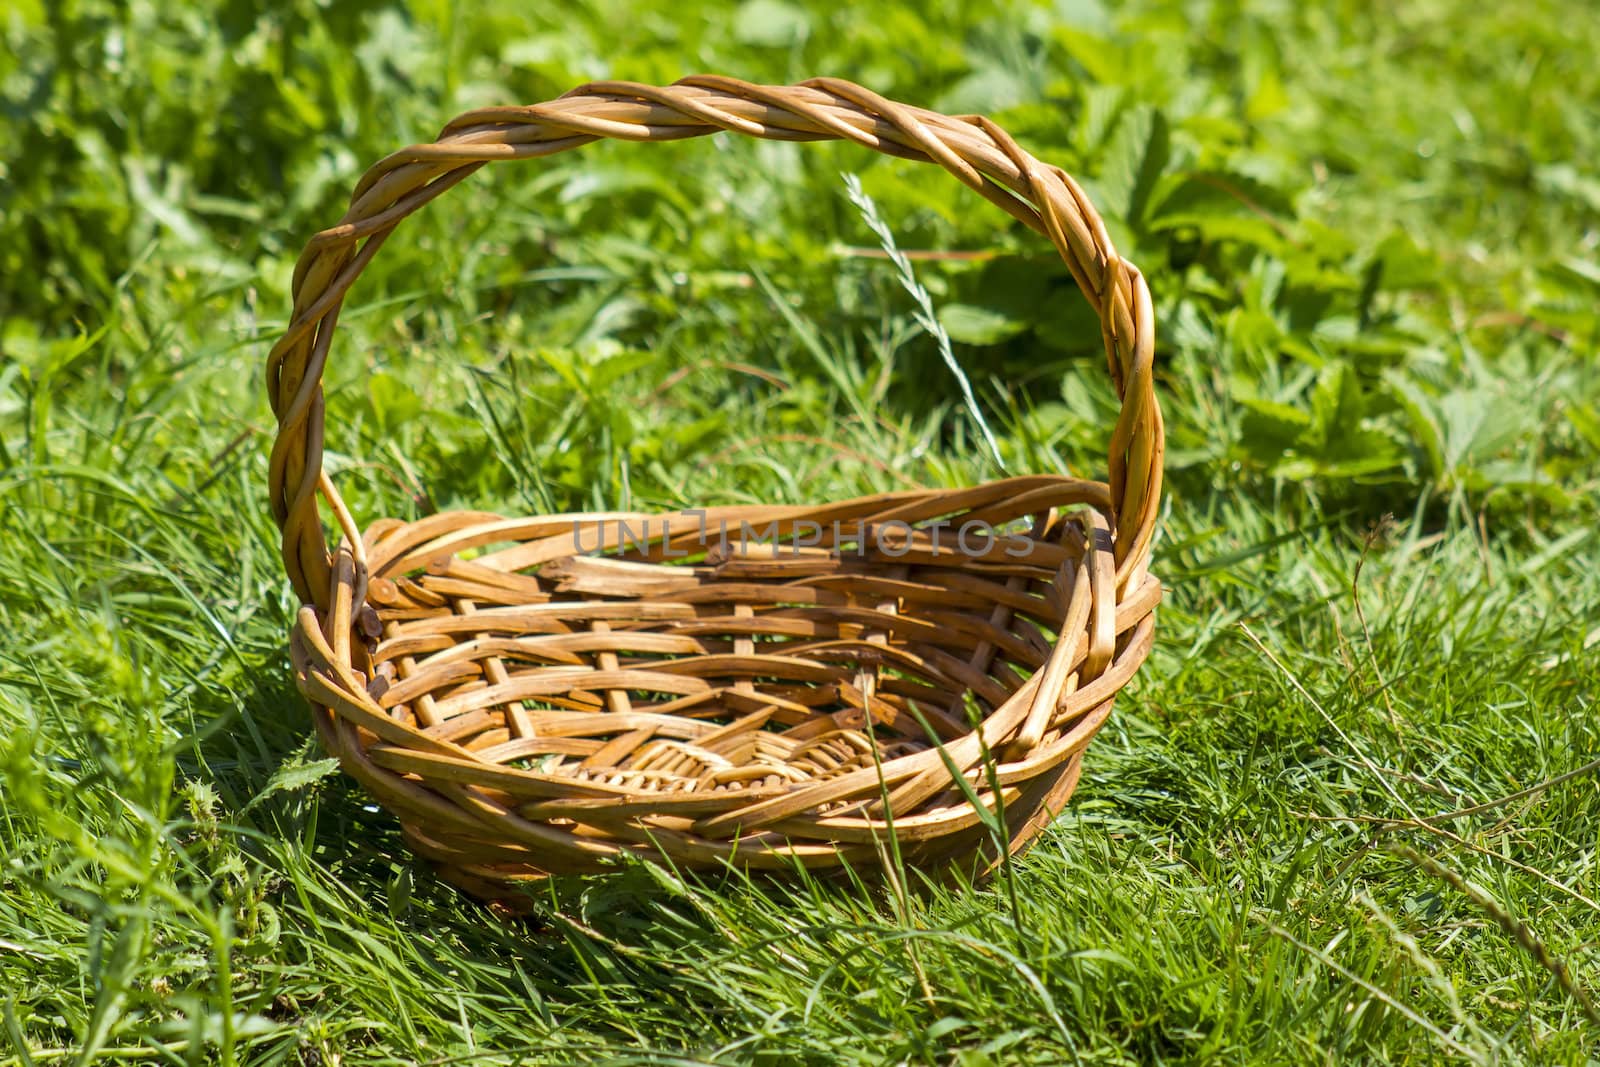 An empty wicker basket on the grass  by miradrozdowski